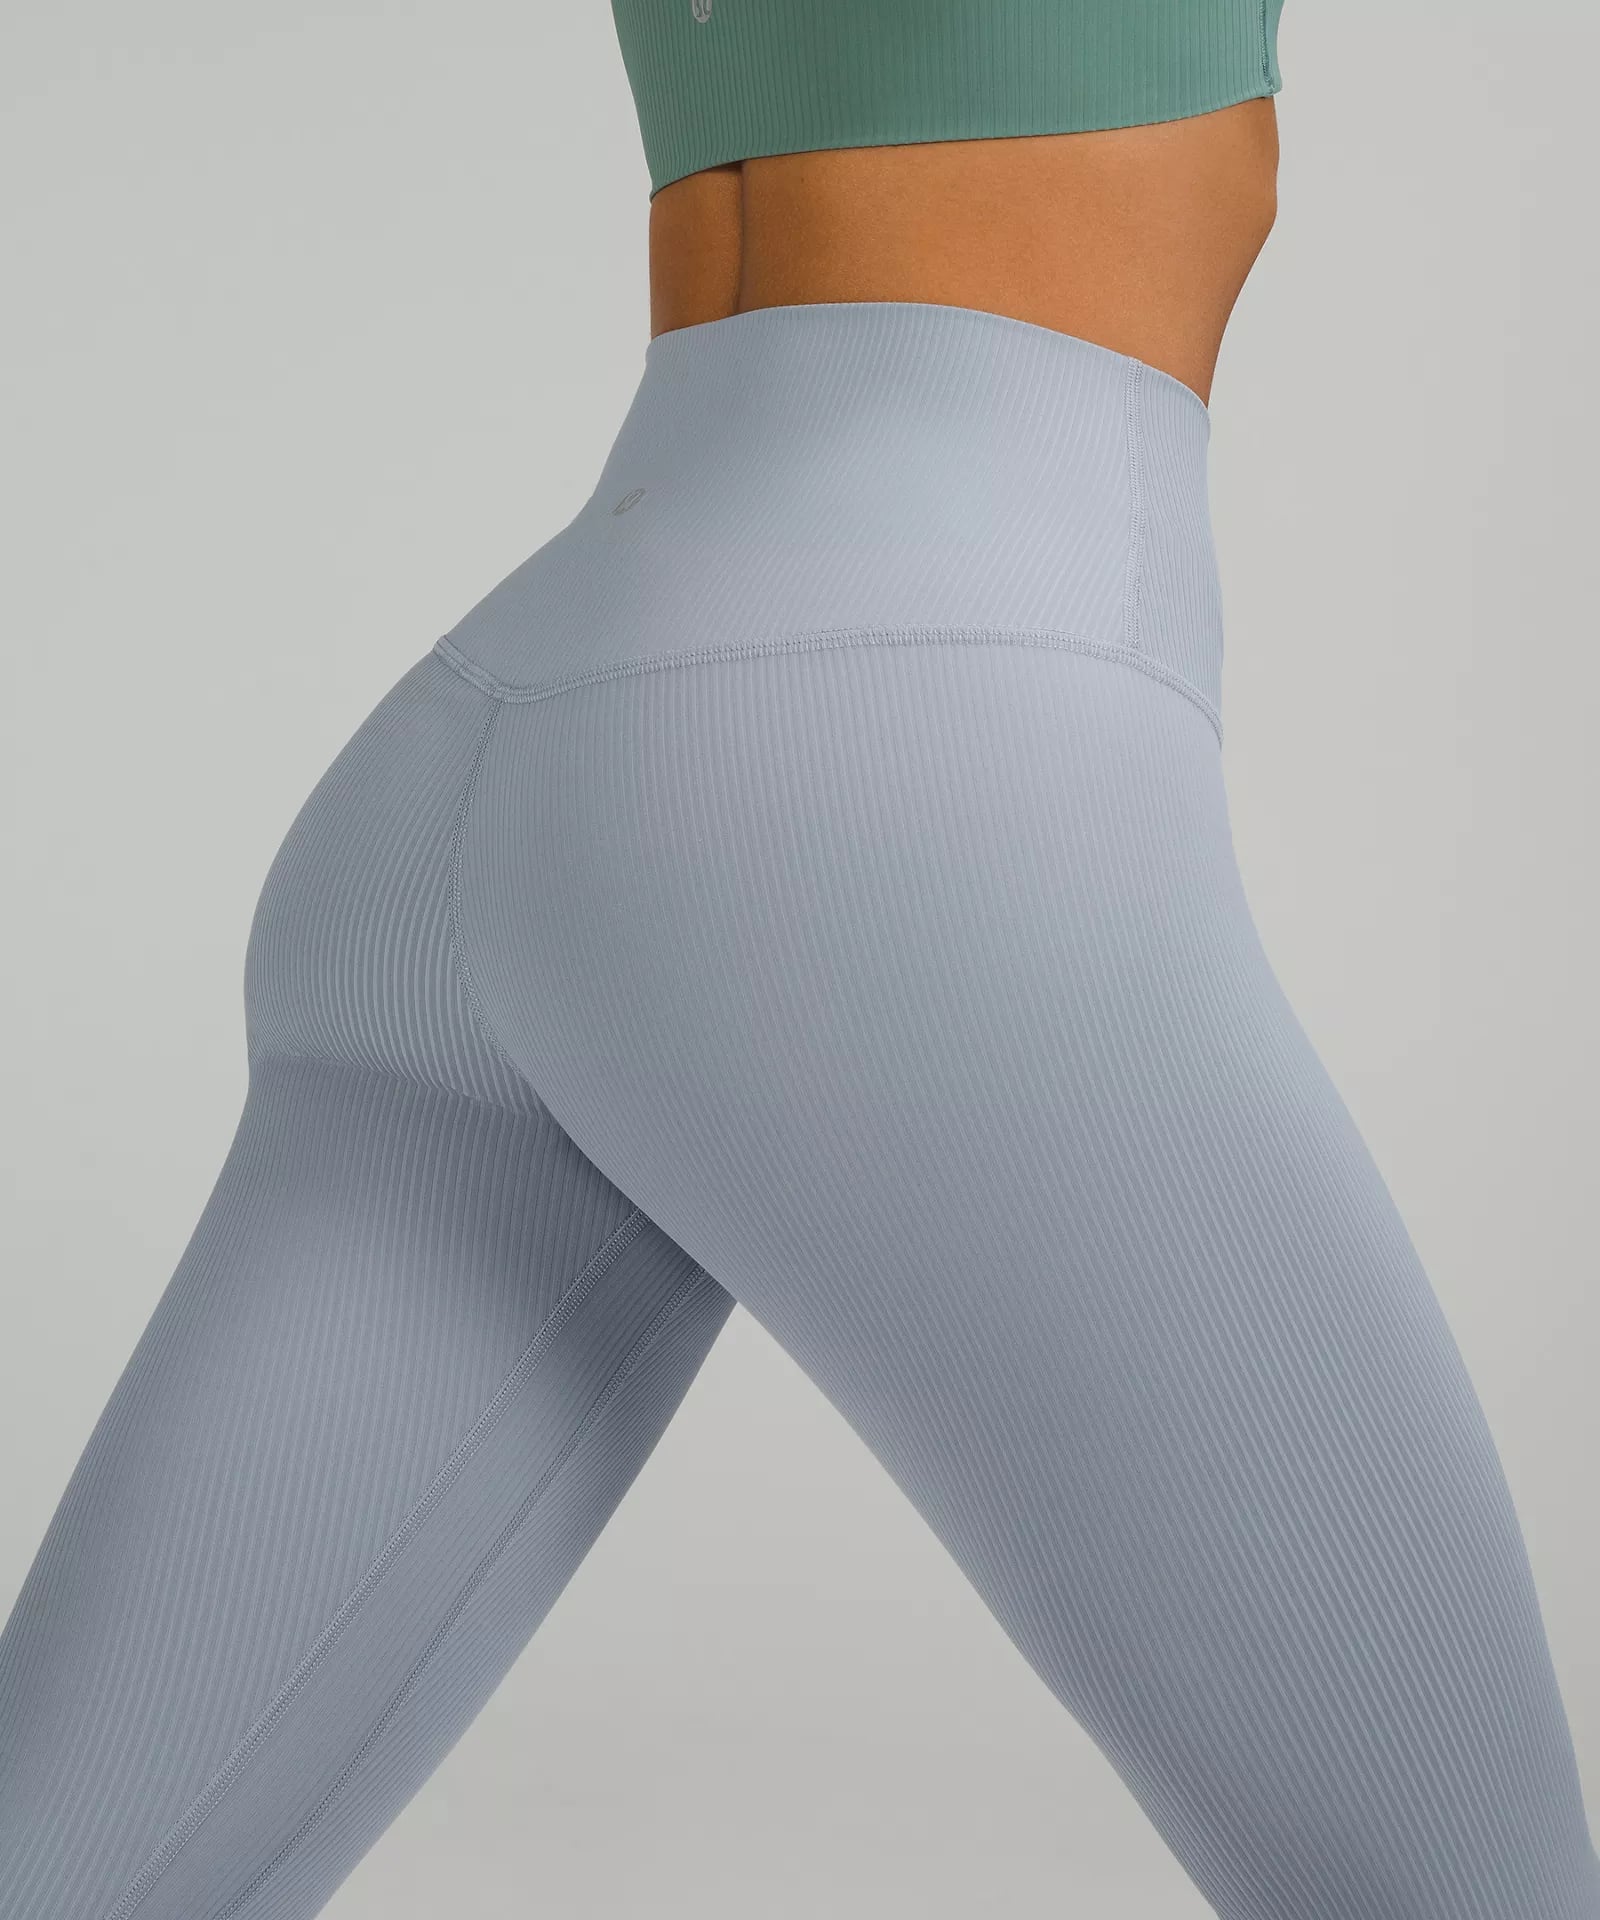 Lululemon leggings review: the Align pants